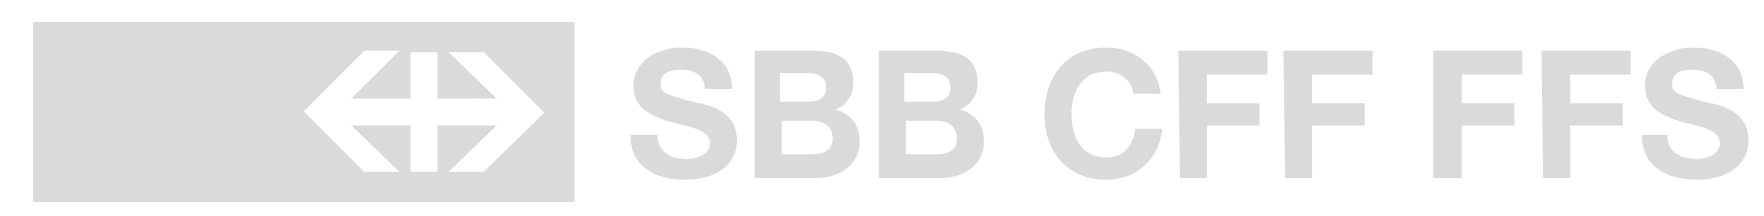 SBB CFF FFS logo